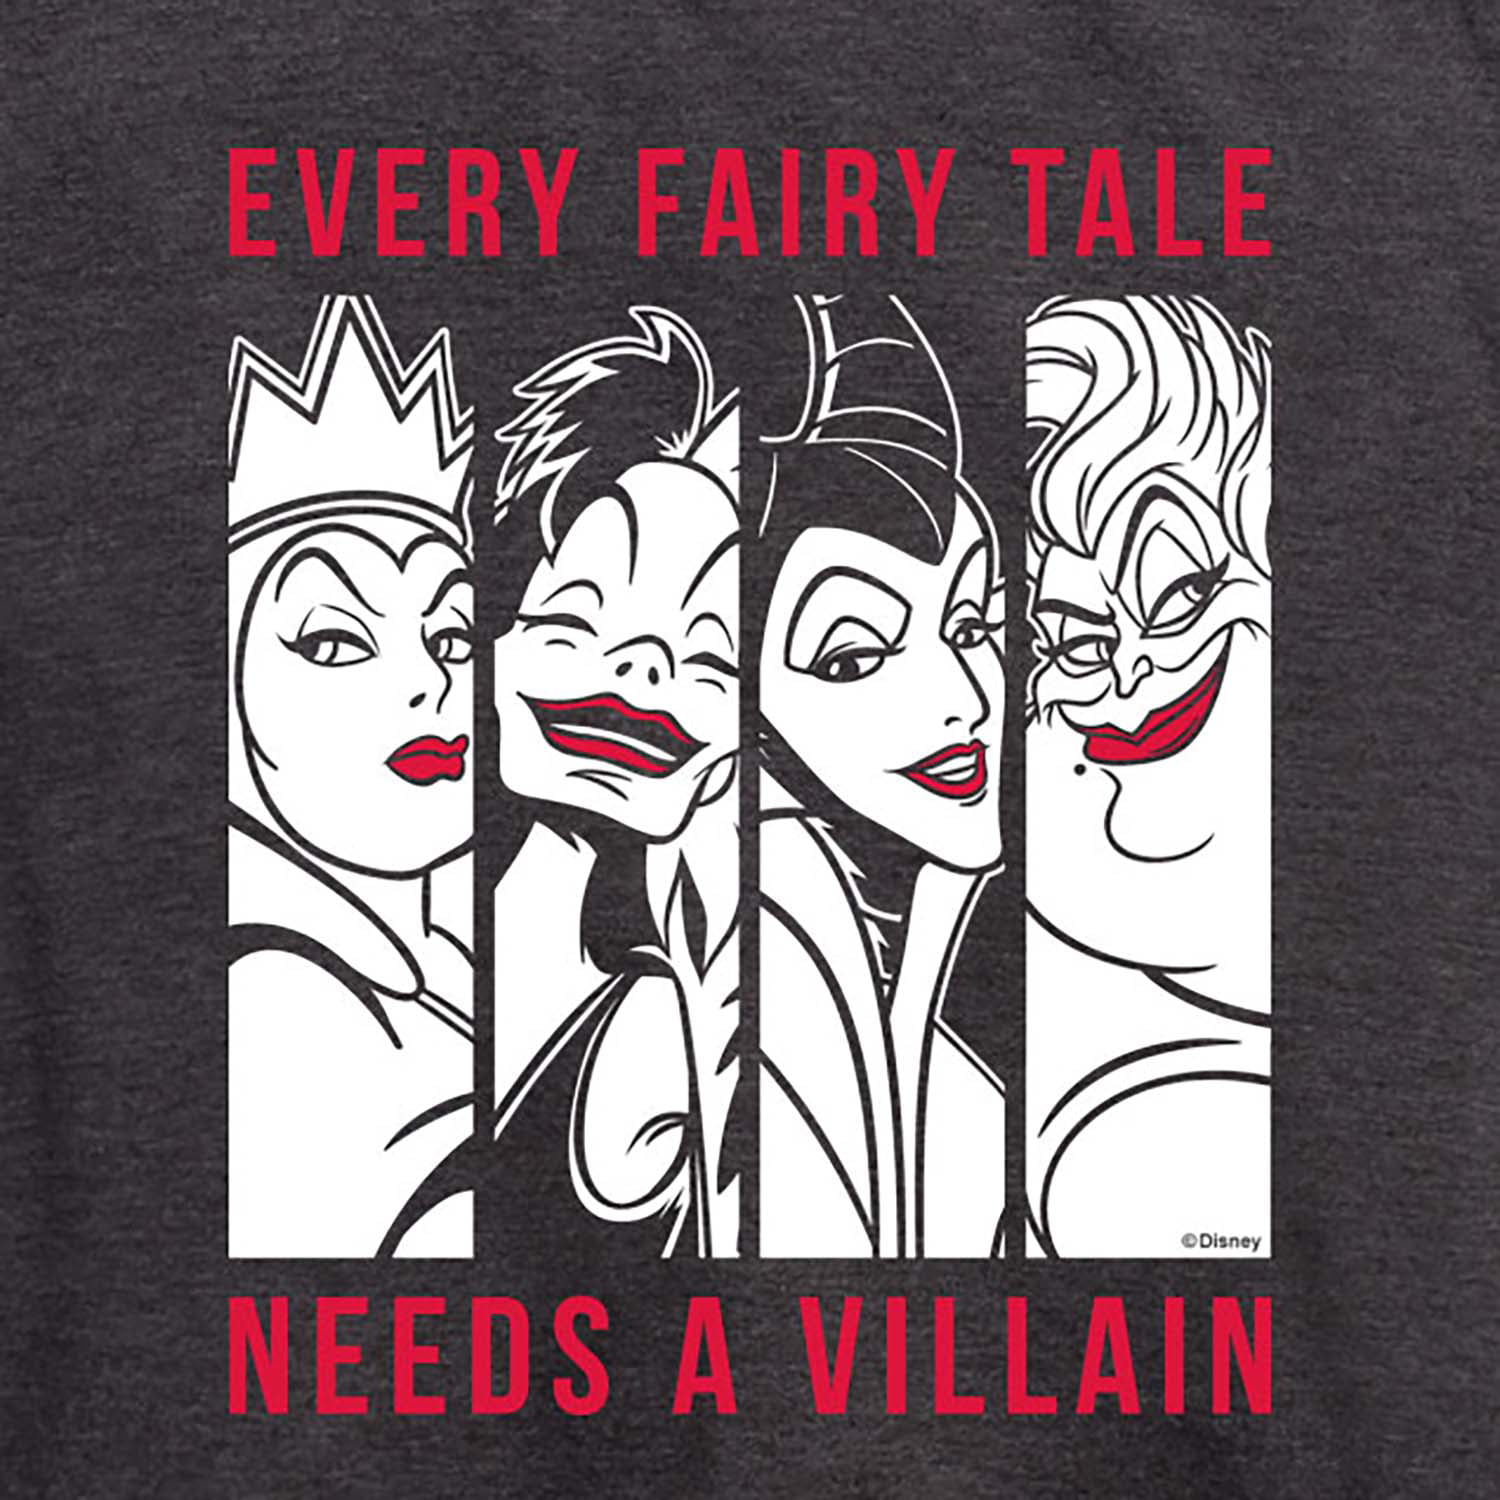 Disney Villains - Every Fairy Tale Needs A Villian - Women's Short Sleeve  Graphic T-Shirt